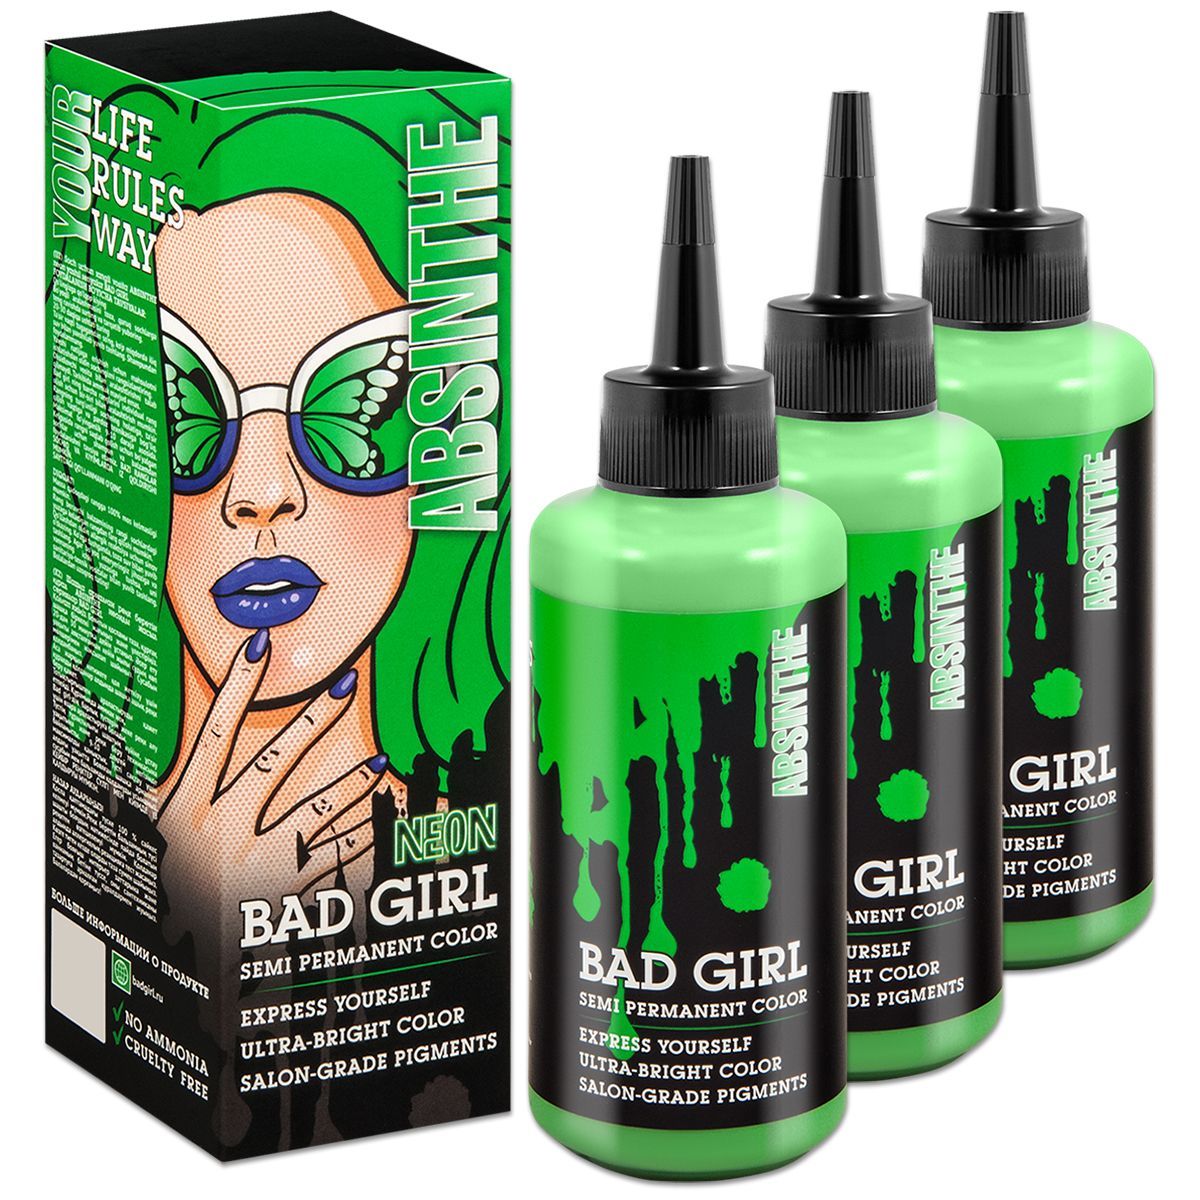 Зеленый оттеночный. Оттеночный бальзам зеленый. Косметика для волос Bad hair. Пигмент прямого действия для волос Bad girl отзывы. Оттеночный бальзам для волос Bad girl Ice Dragon отзывы.